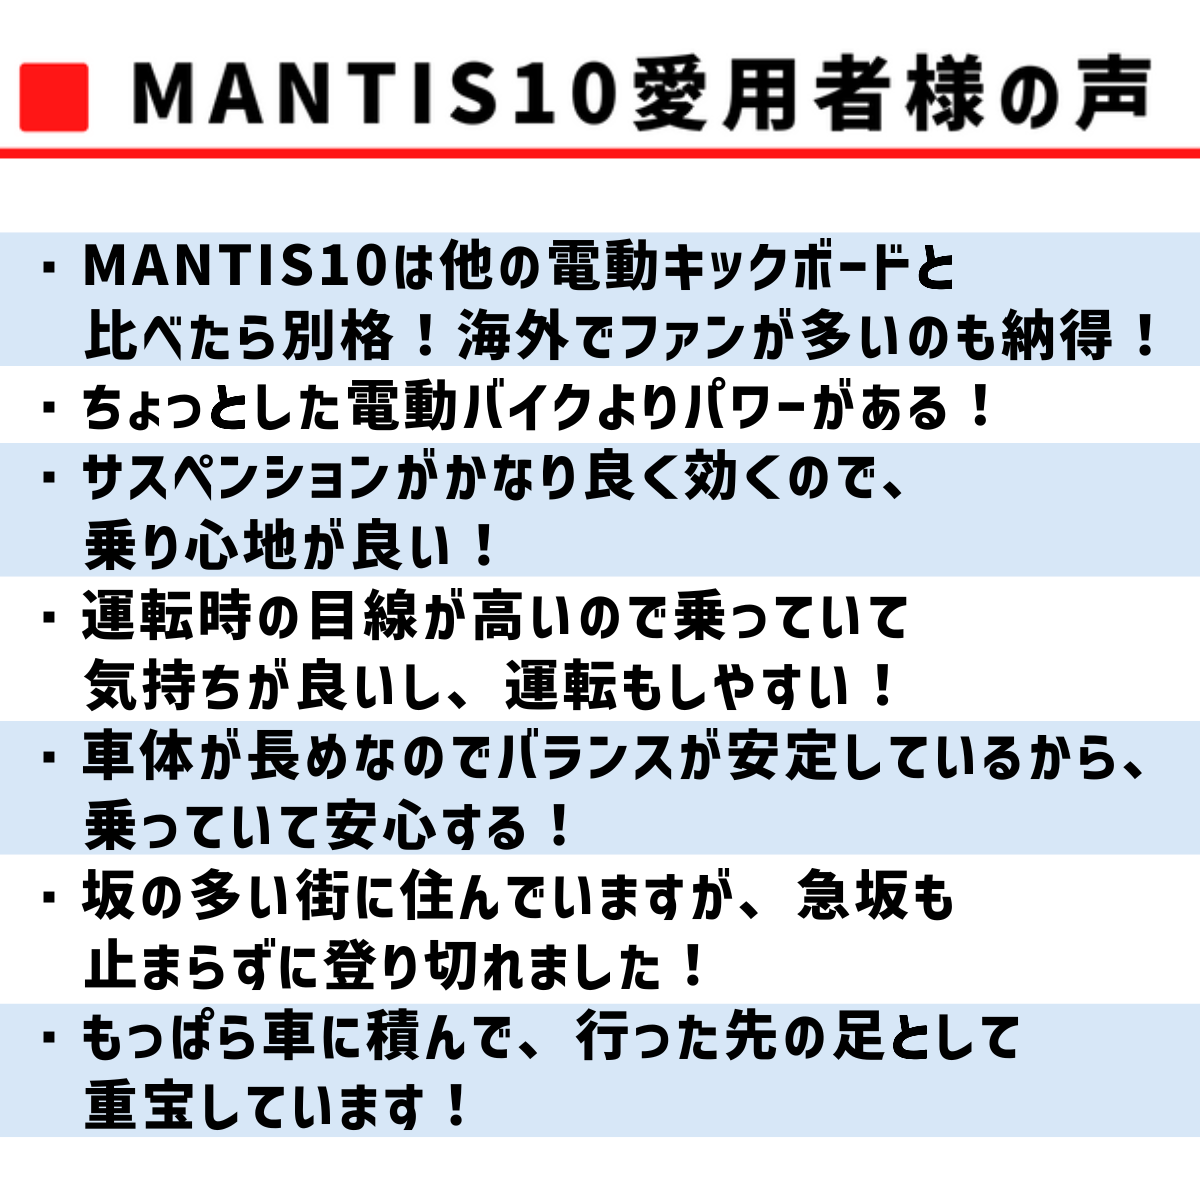 MANTIS10 愛用者様の声